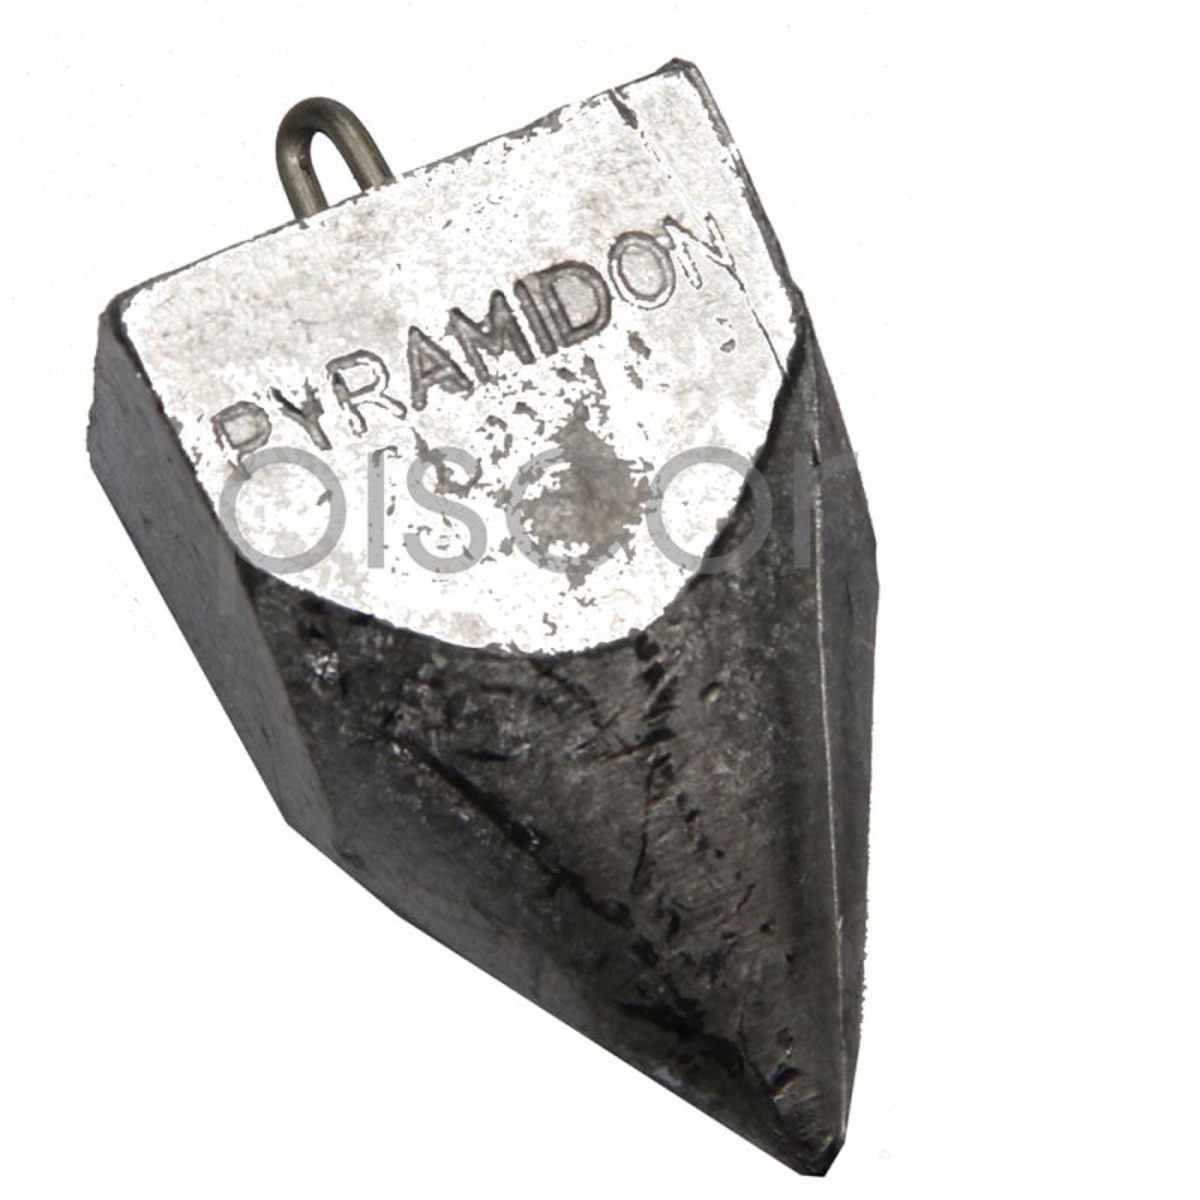 Fonderia Roma Pyramidon con Anello Inox - 150 g